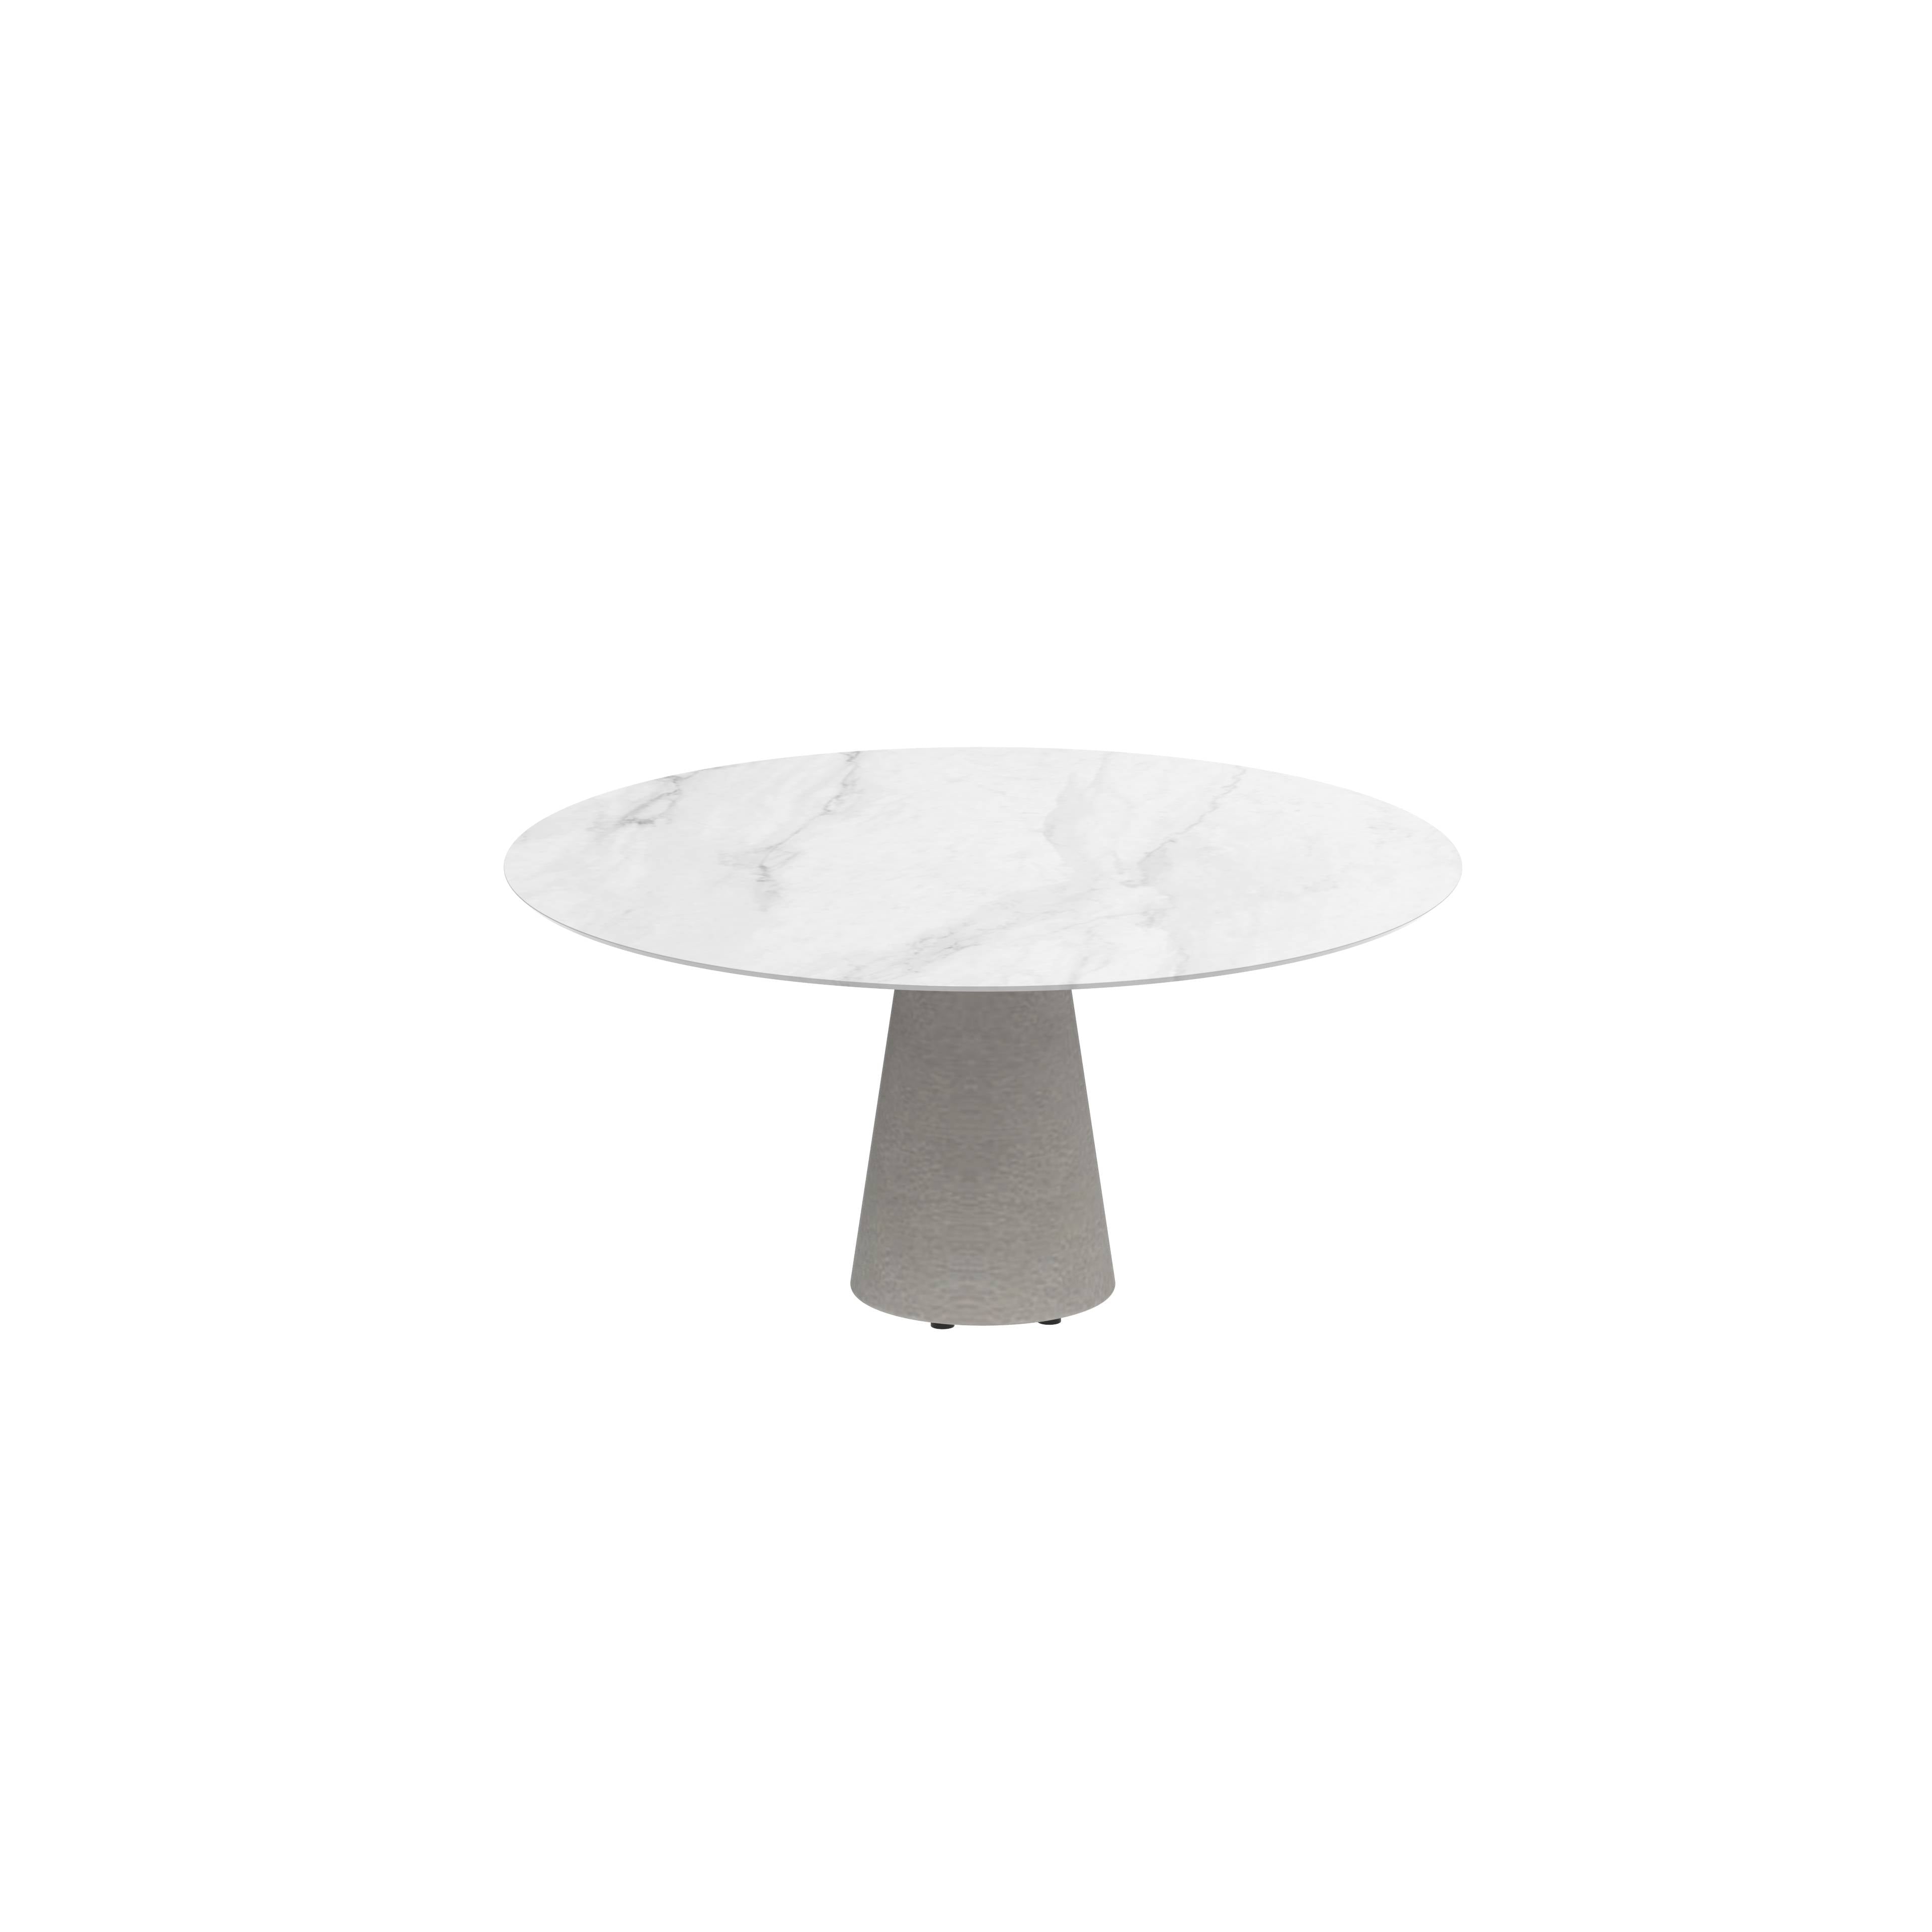 Conix Table Round Ø 160cm Legs Concrete Cement Grey - Tabletop Ceramic Bianco Statuario